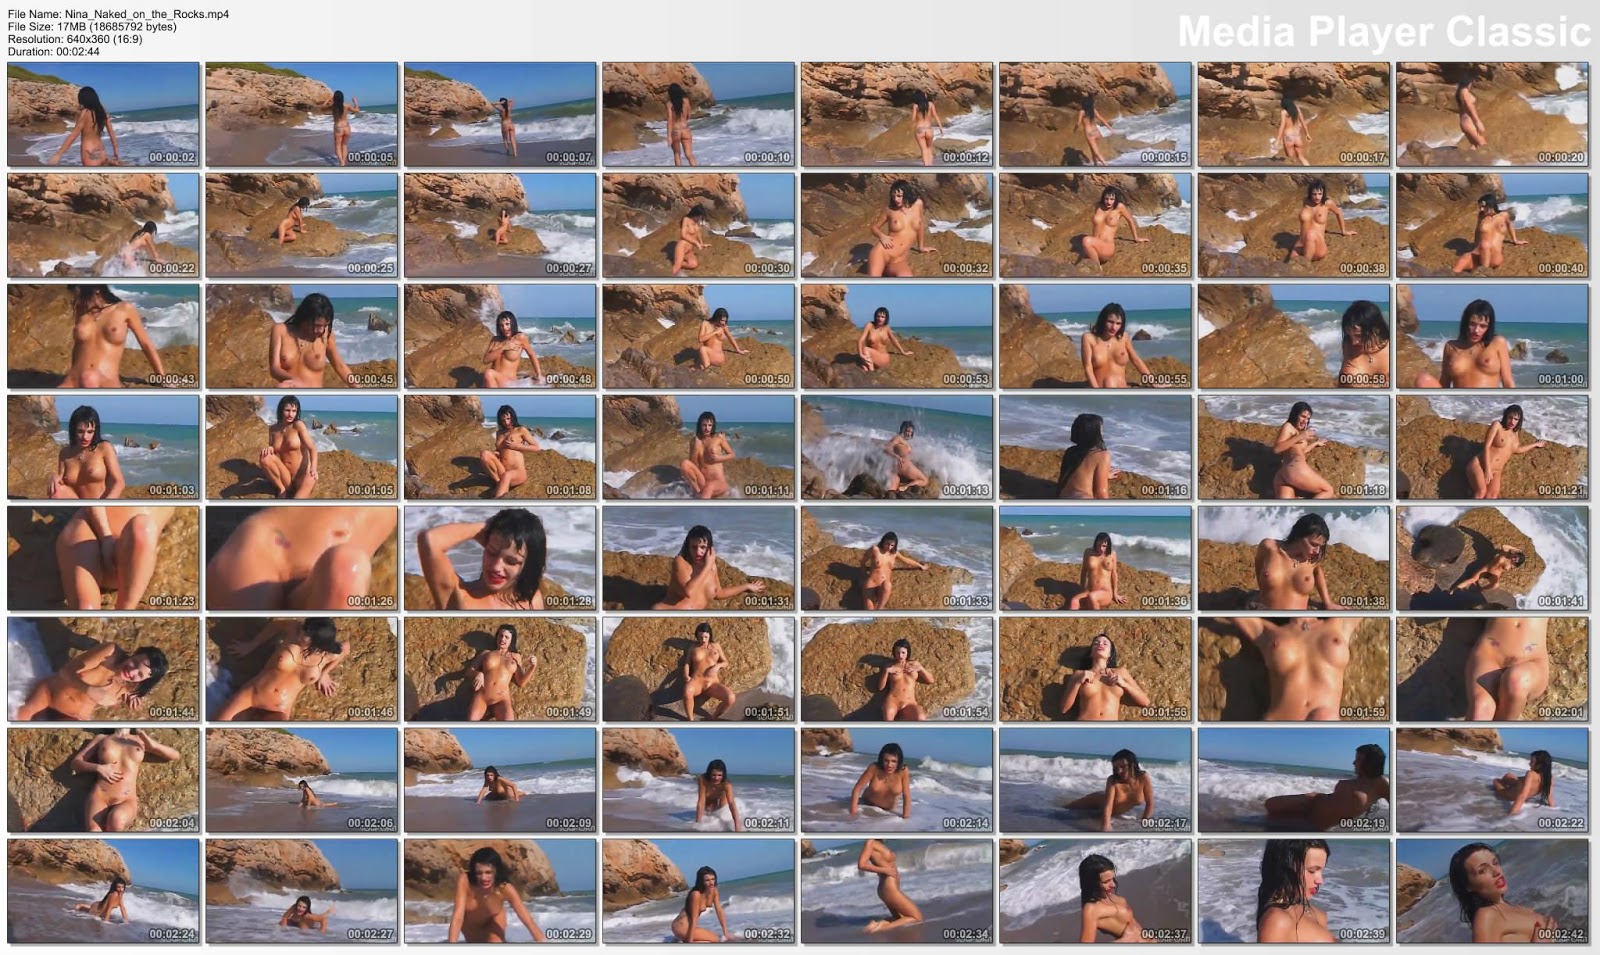 chica desnuda en la playa